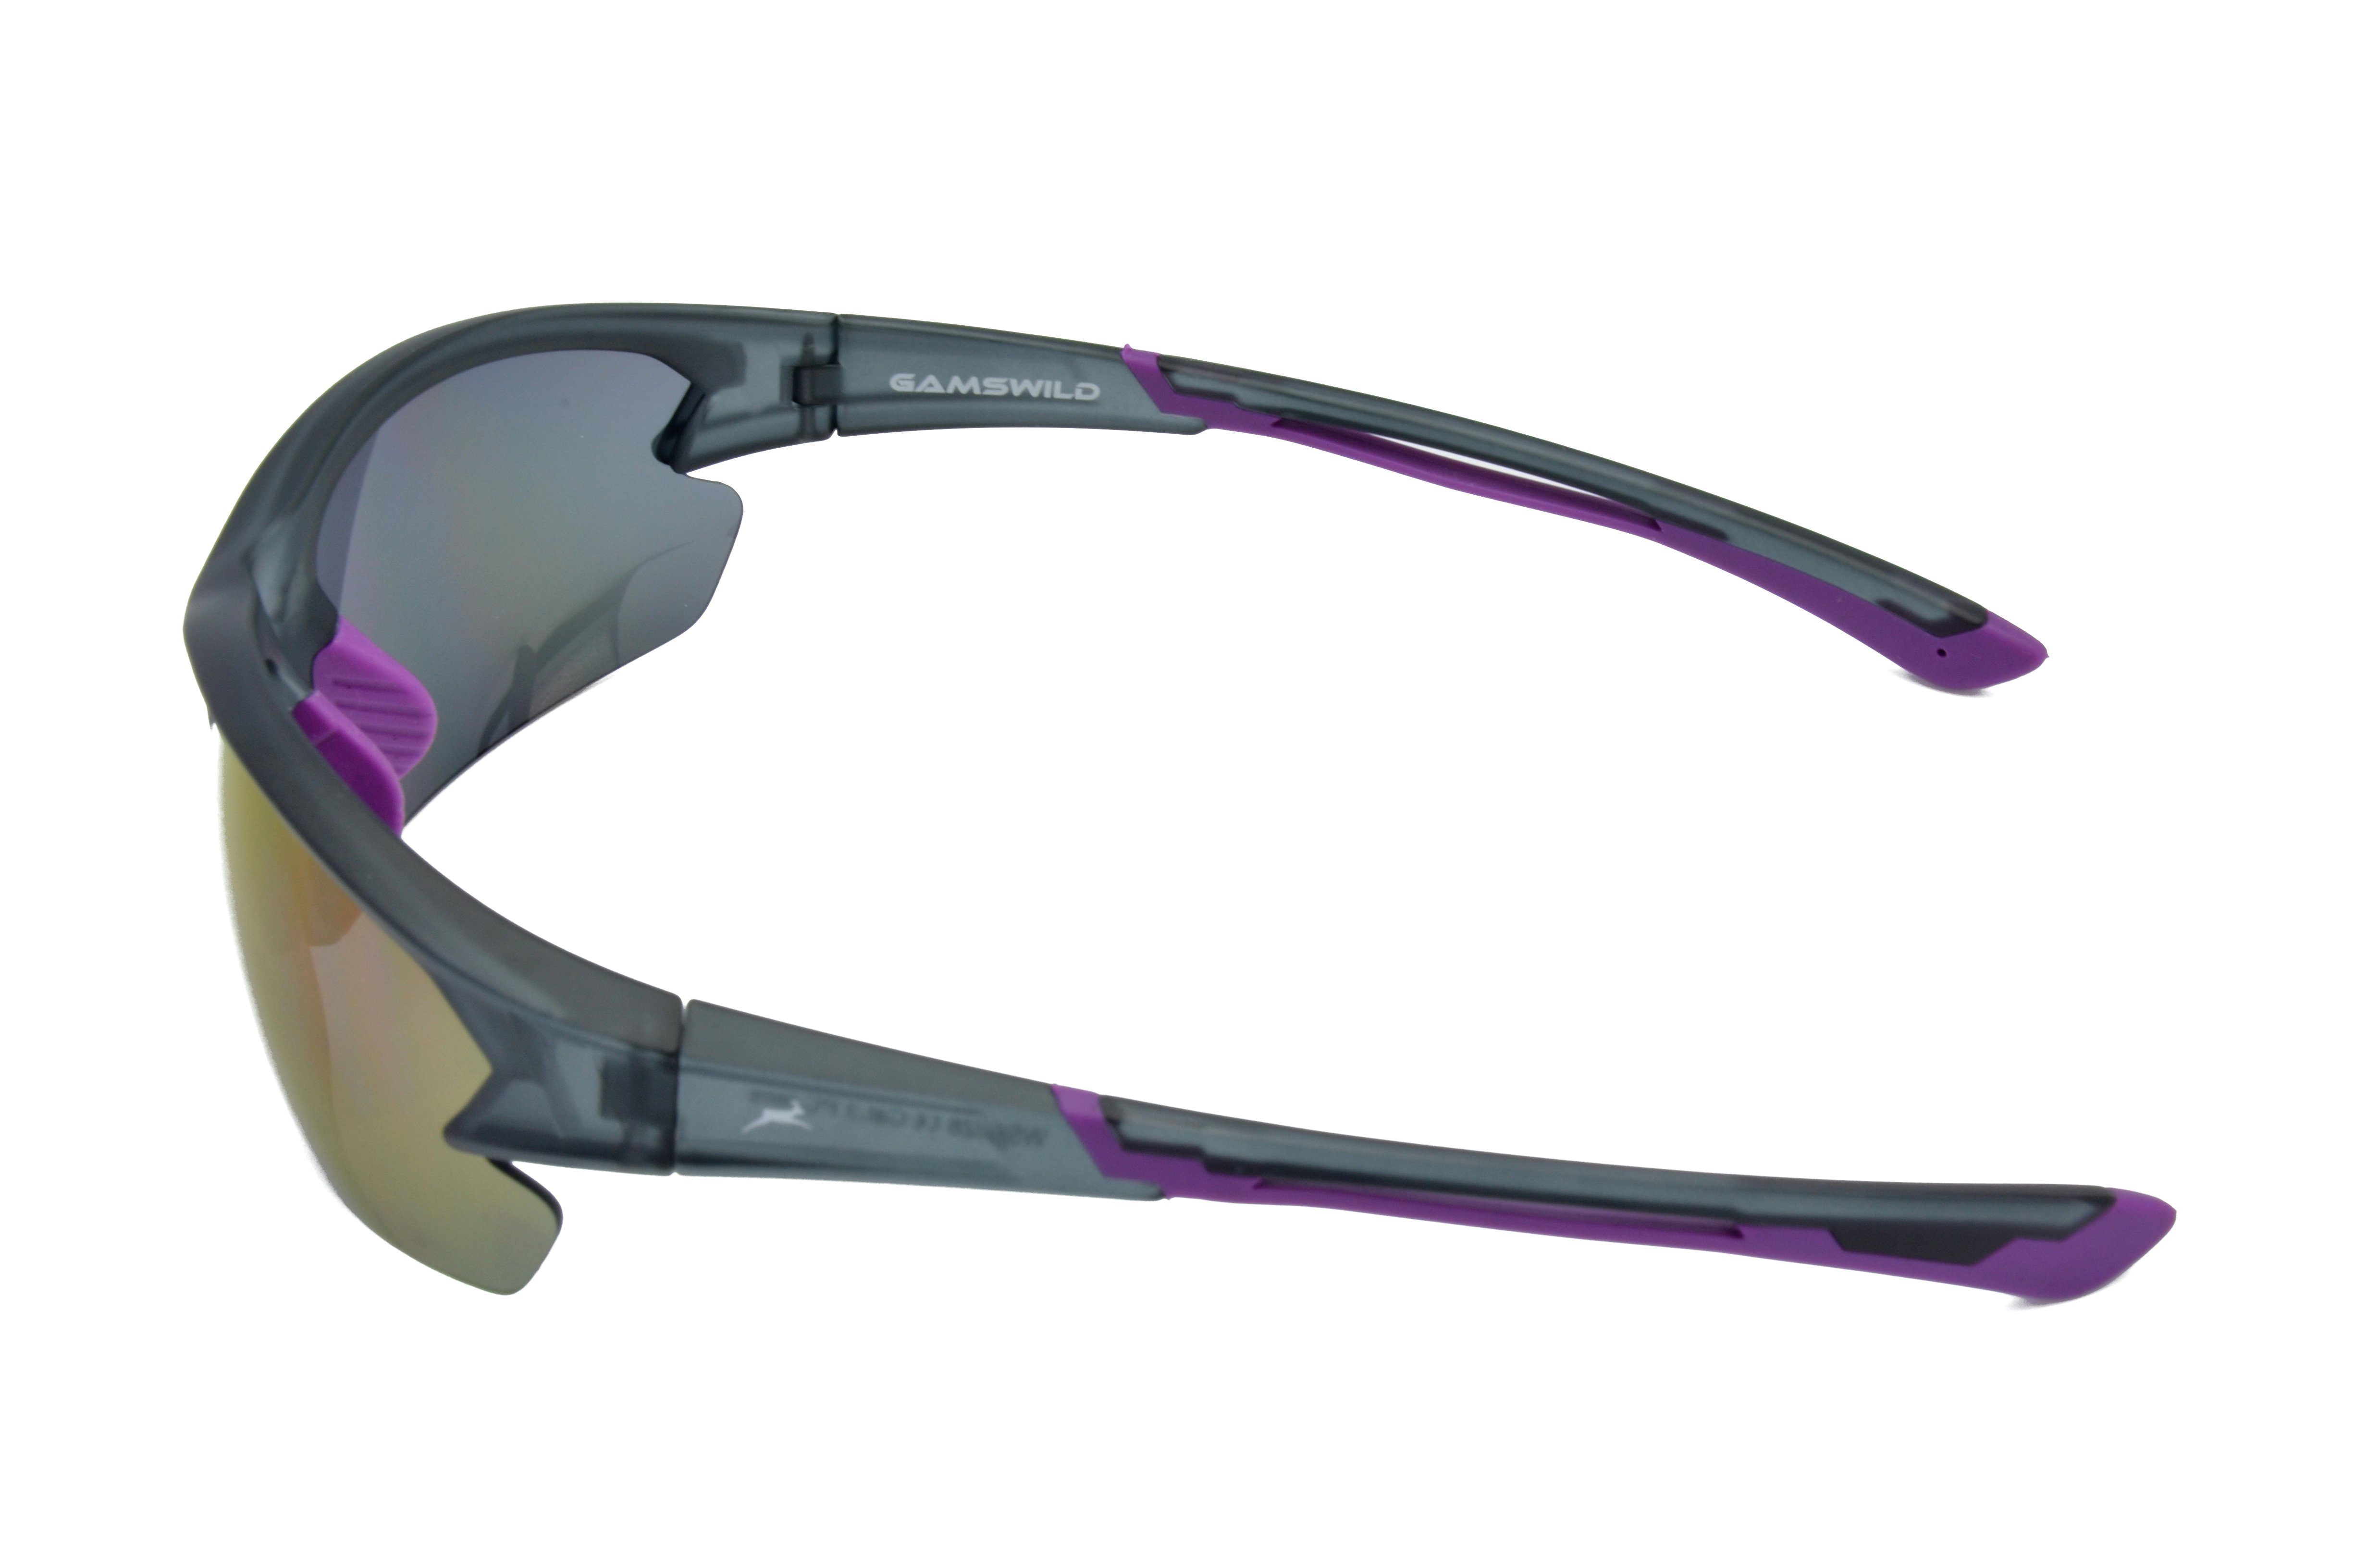 Sonnenbrille Fahrradbrille Sportbrille Herren Unisex, Halbrahmenbrille Damen violett, rot-orange, Gamswild blau, WS6028 Skibrille